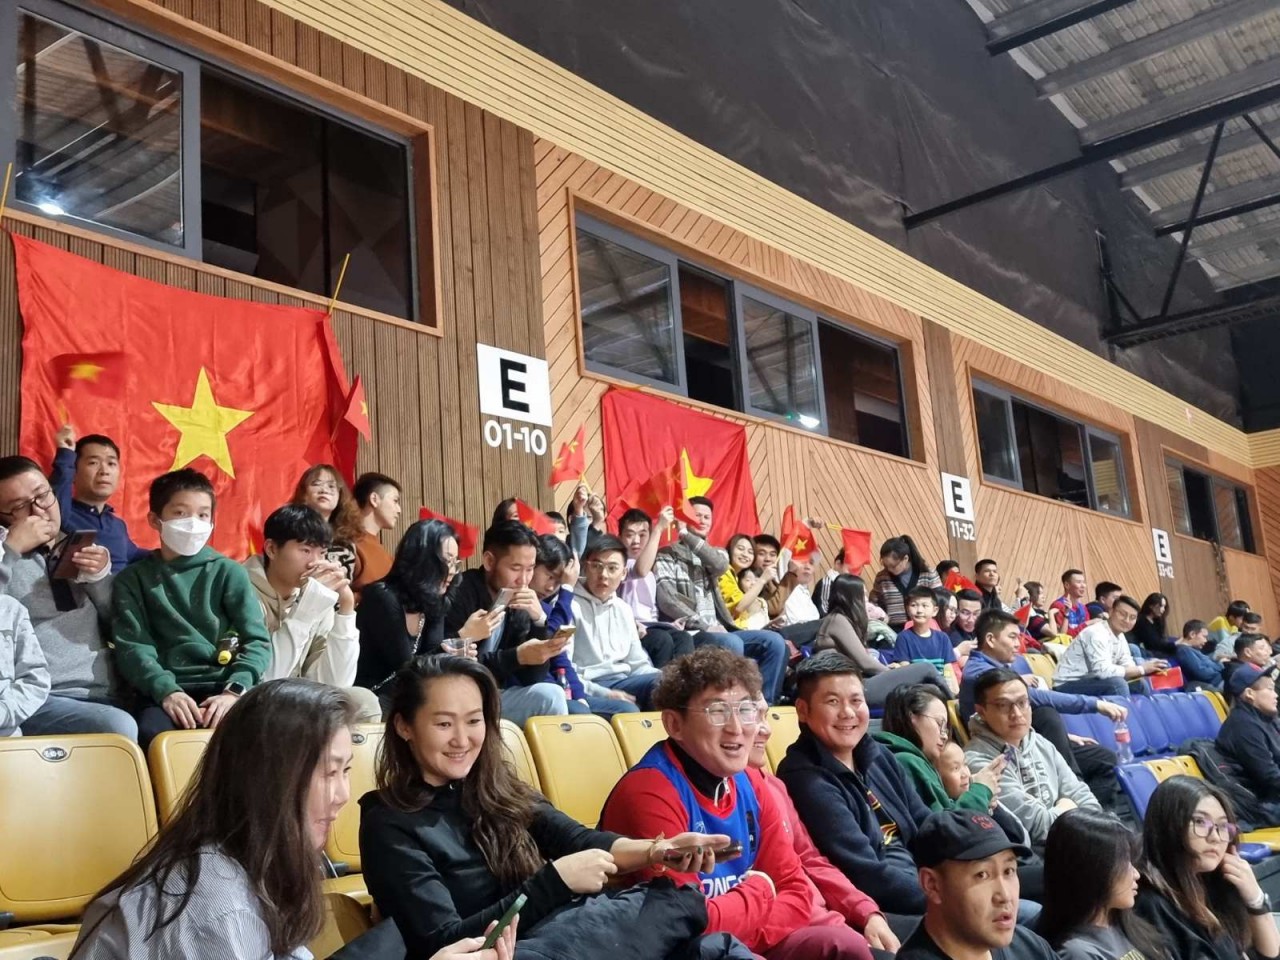 Kiều bào cổ vũ cho tuyển bóng rổ Việt Nam thi đấu dưới cái lạnh -19 độ C tại Mông Cổ